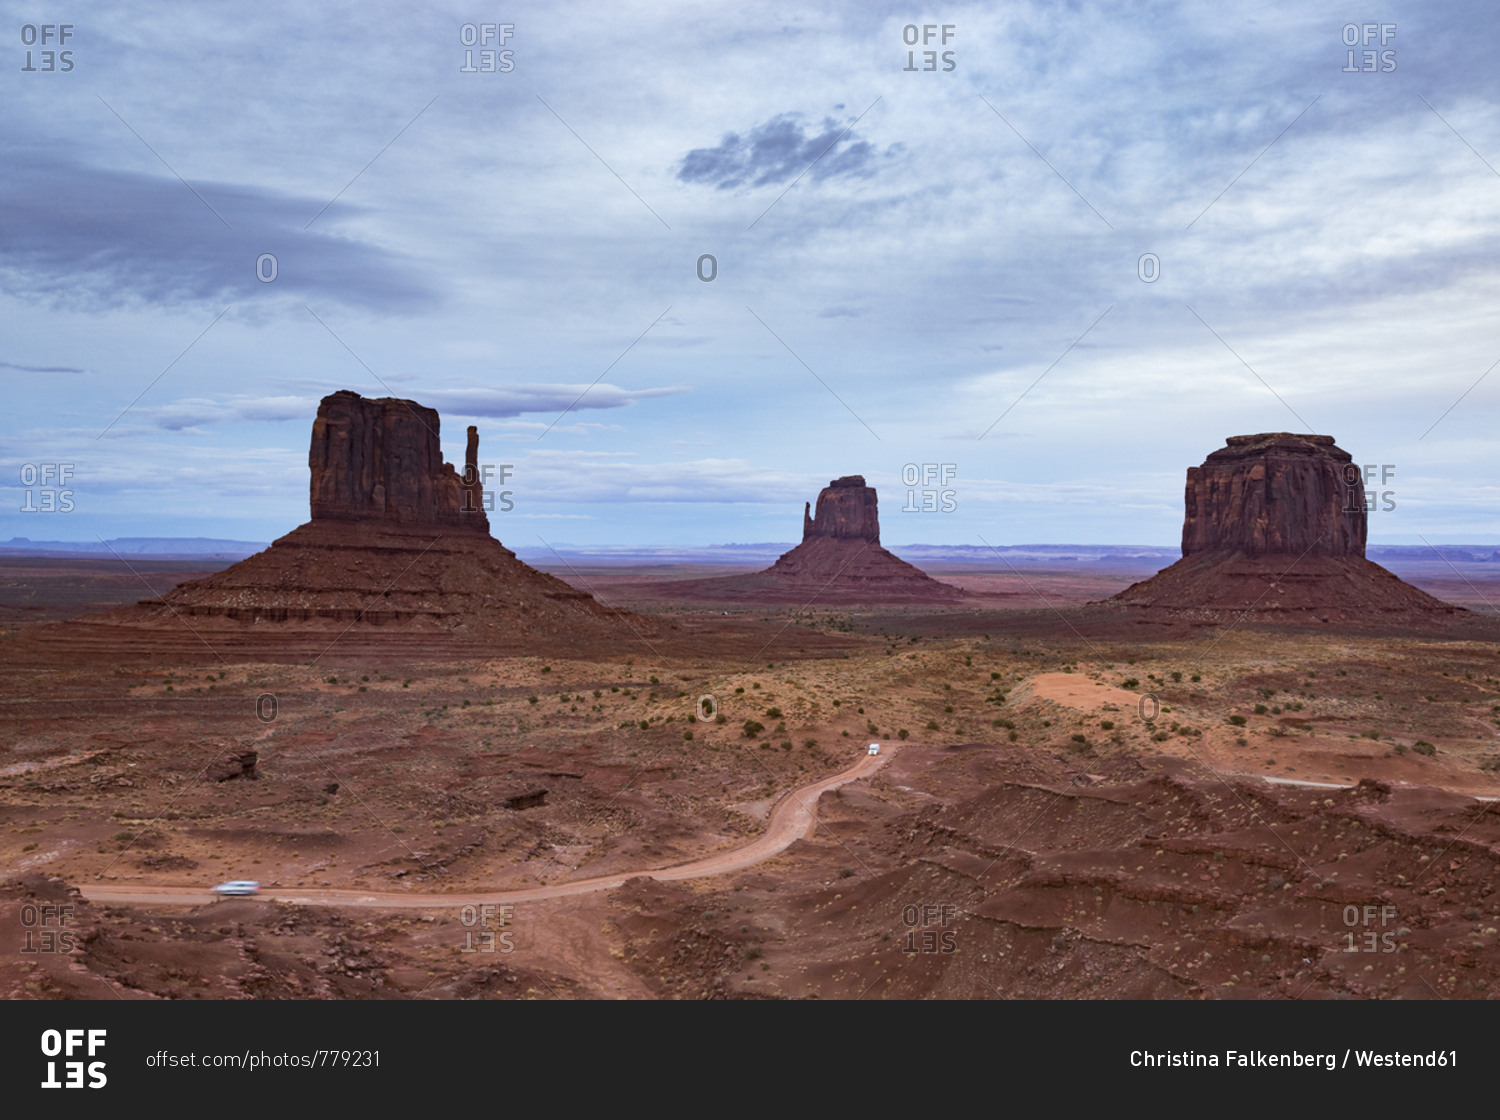 USA- Arizona- Navajo Nation- Monument Valley